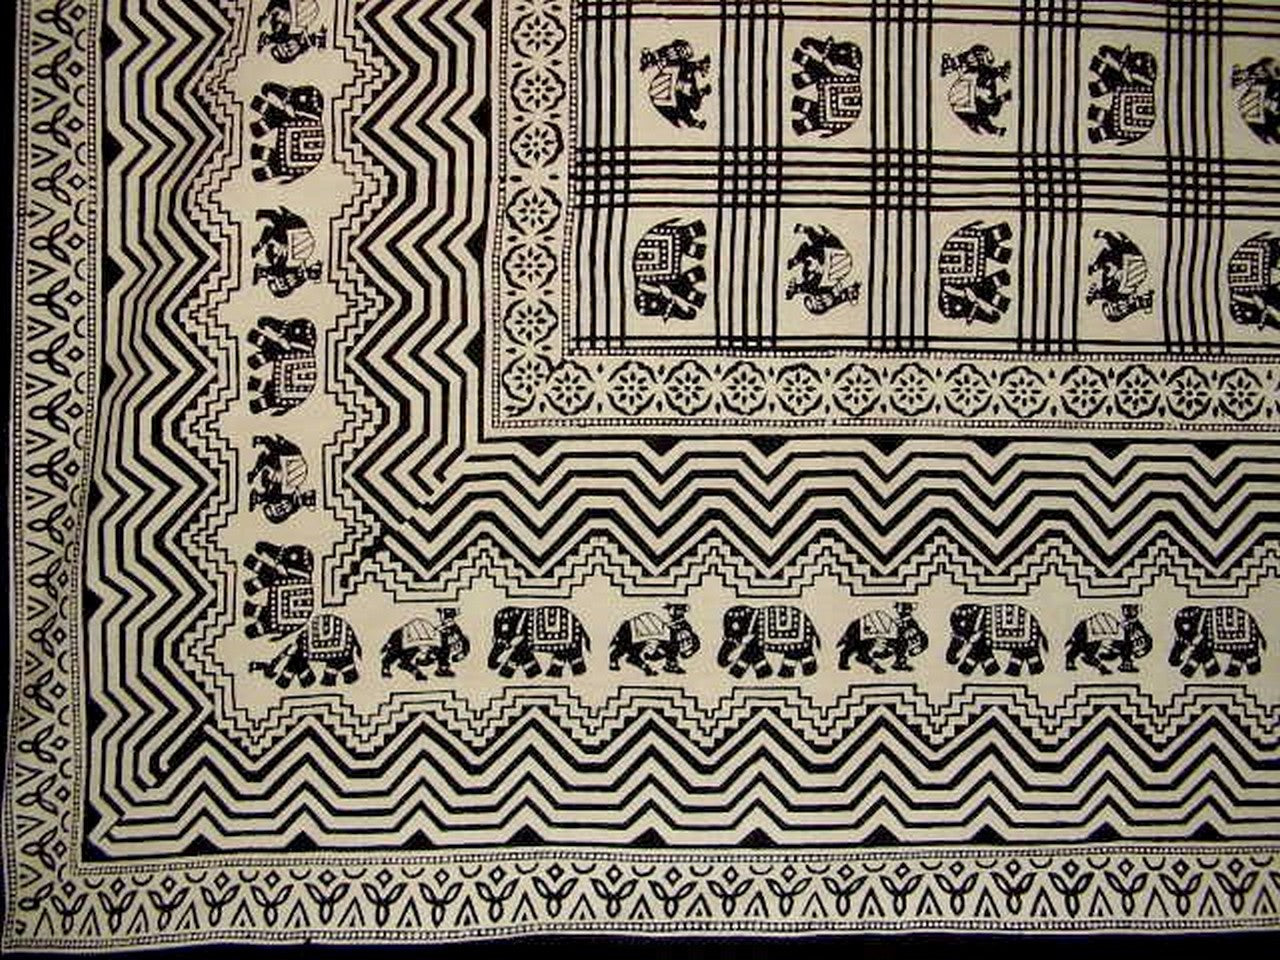 非洲印花掛毯棉質床罩 108 英吋 x 108 英吋大號-特大號黑色